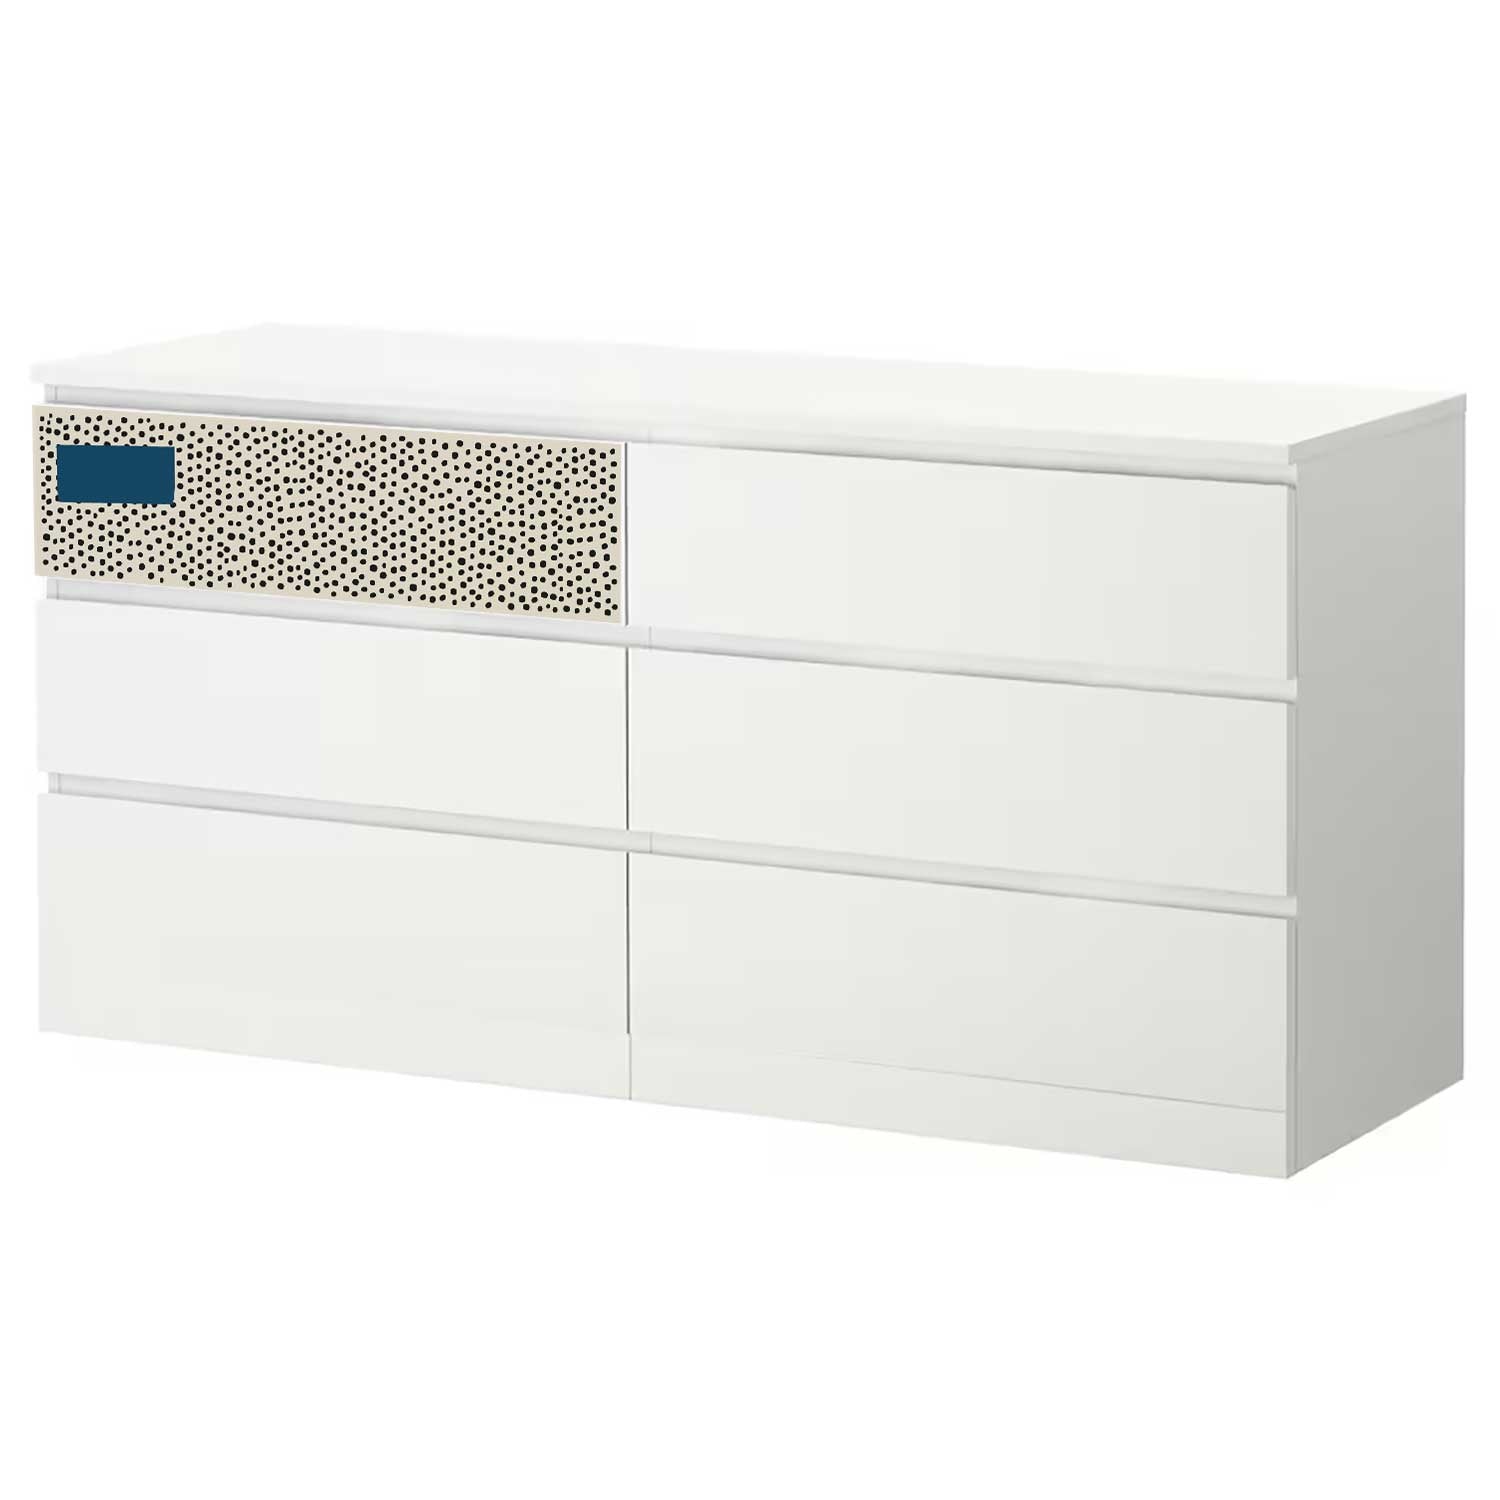 Möbelfolie für IKEA MALM Kommode 6-Schubladen 160x78 cm 'Pünktchen'